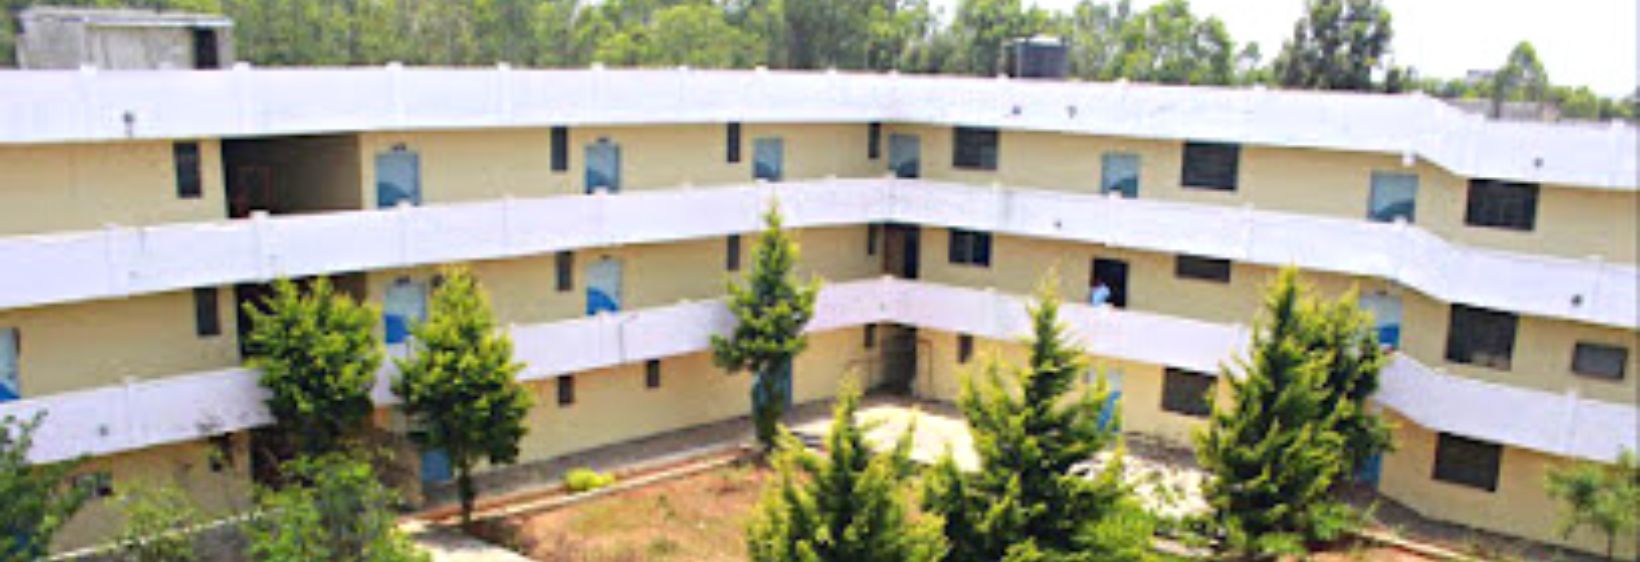 Bhuvan College of Nursing - Bangalore